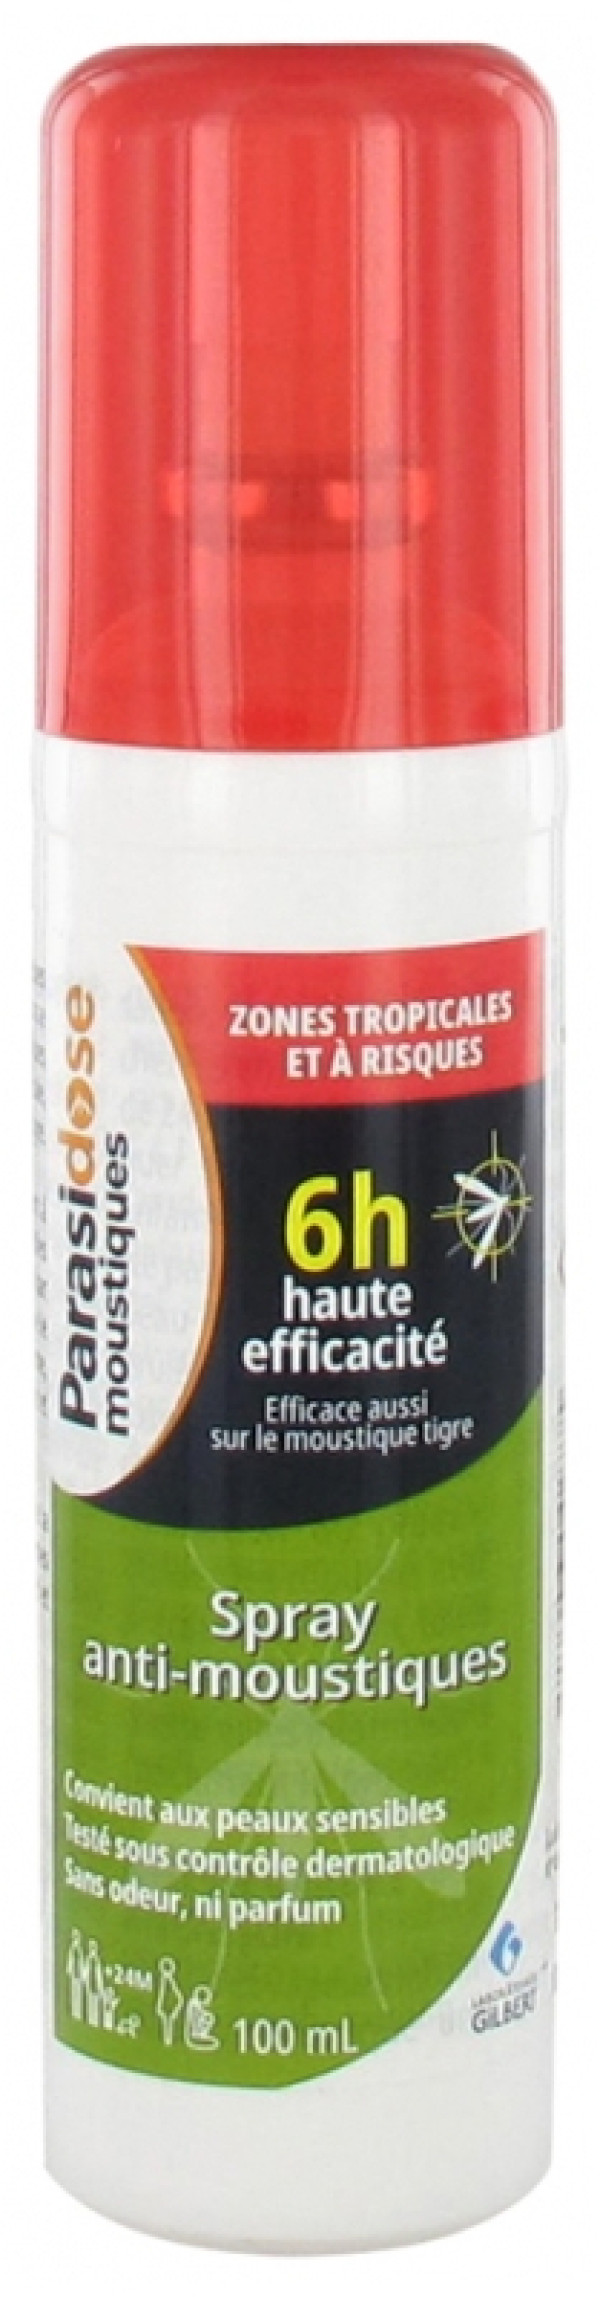 Parasidose Spray Repelente Mosquitos Tropicais 100Ml